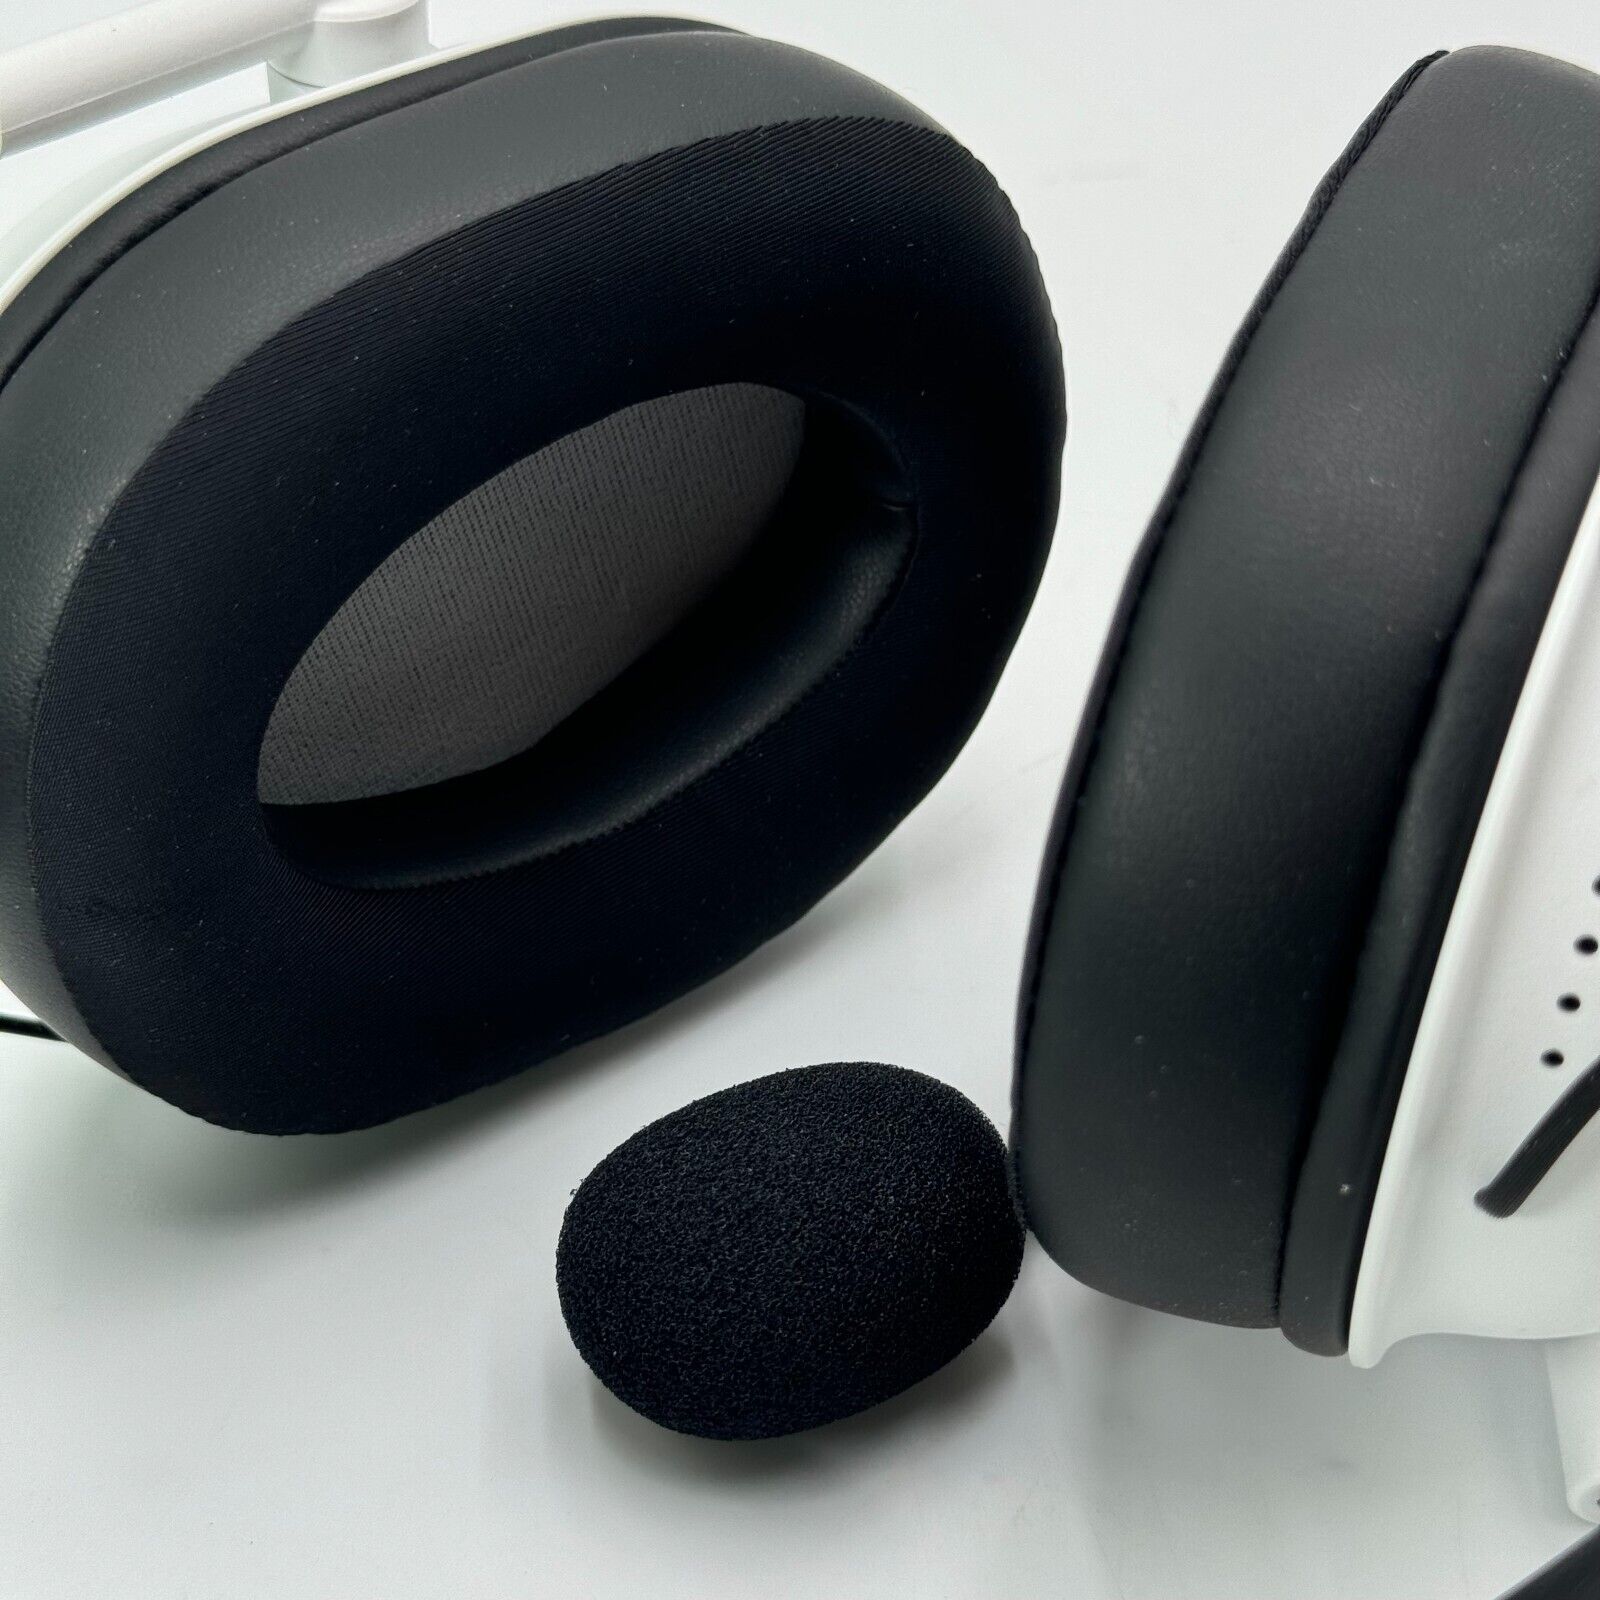 Razer BlackShark V2 X Over the Ear Gaming Headset - White (RZ04-03240700-R3U1)